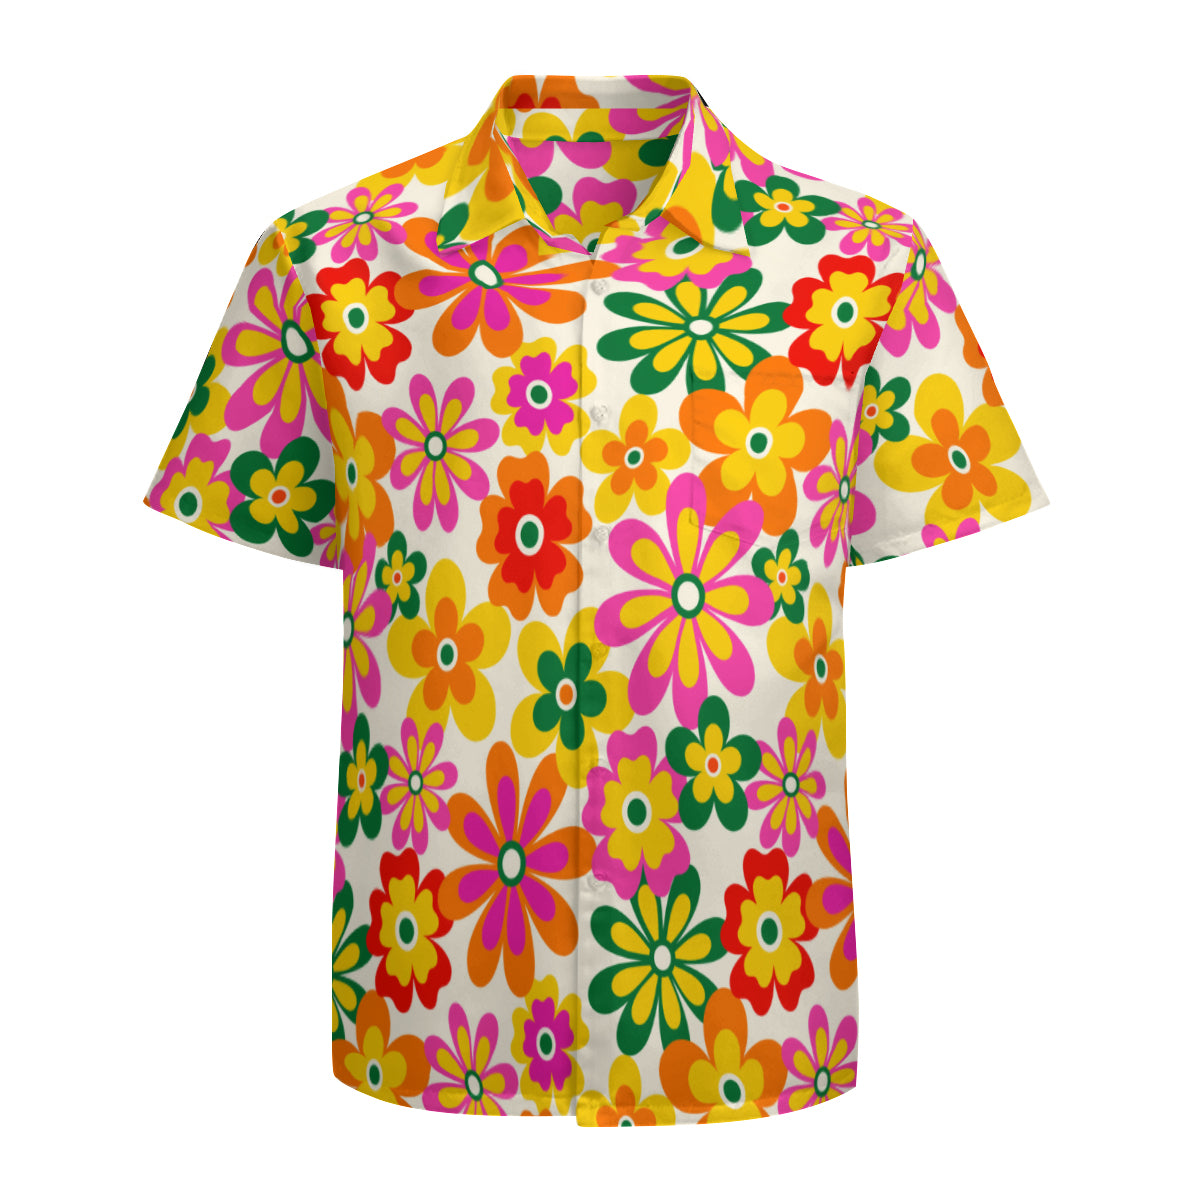 Neon Floral Shirt Men, 60s 70s style shirt men, 70s clothing men, Hippie Shirt Men, Retro Shirt Men, Vintage style shirt men, Hippie Top men